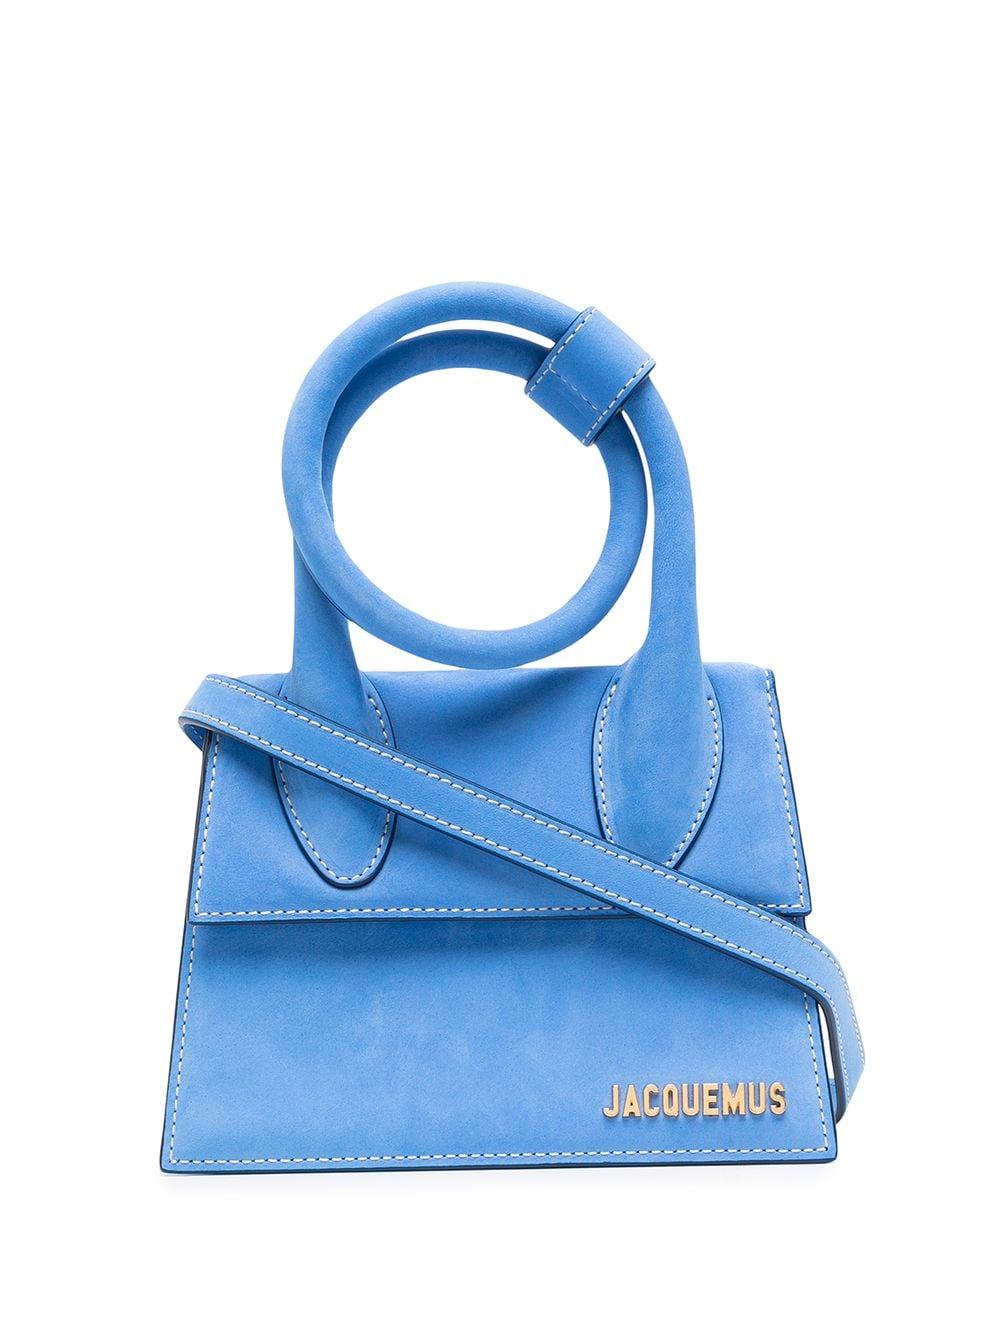 Jacquemus Le Chiquito Noeud Kleine Tas in het Blauw | Lyst NL